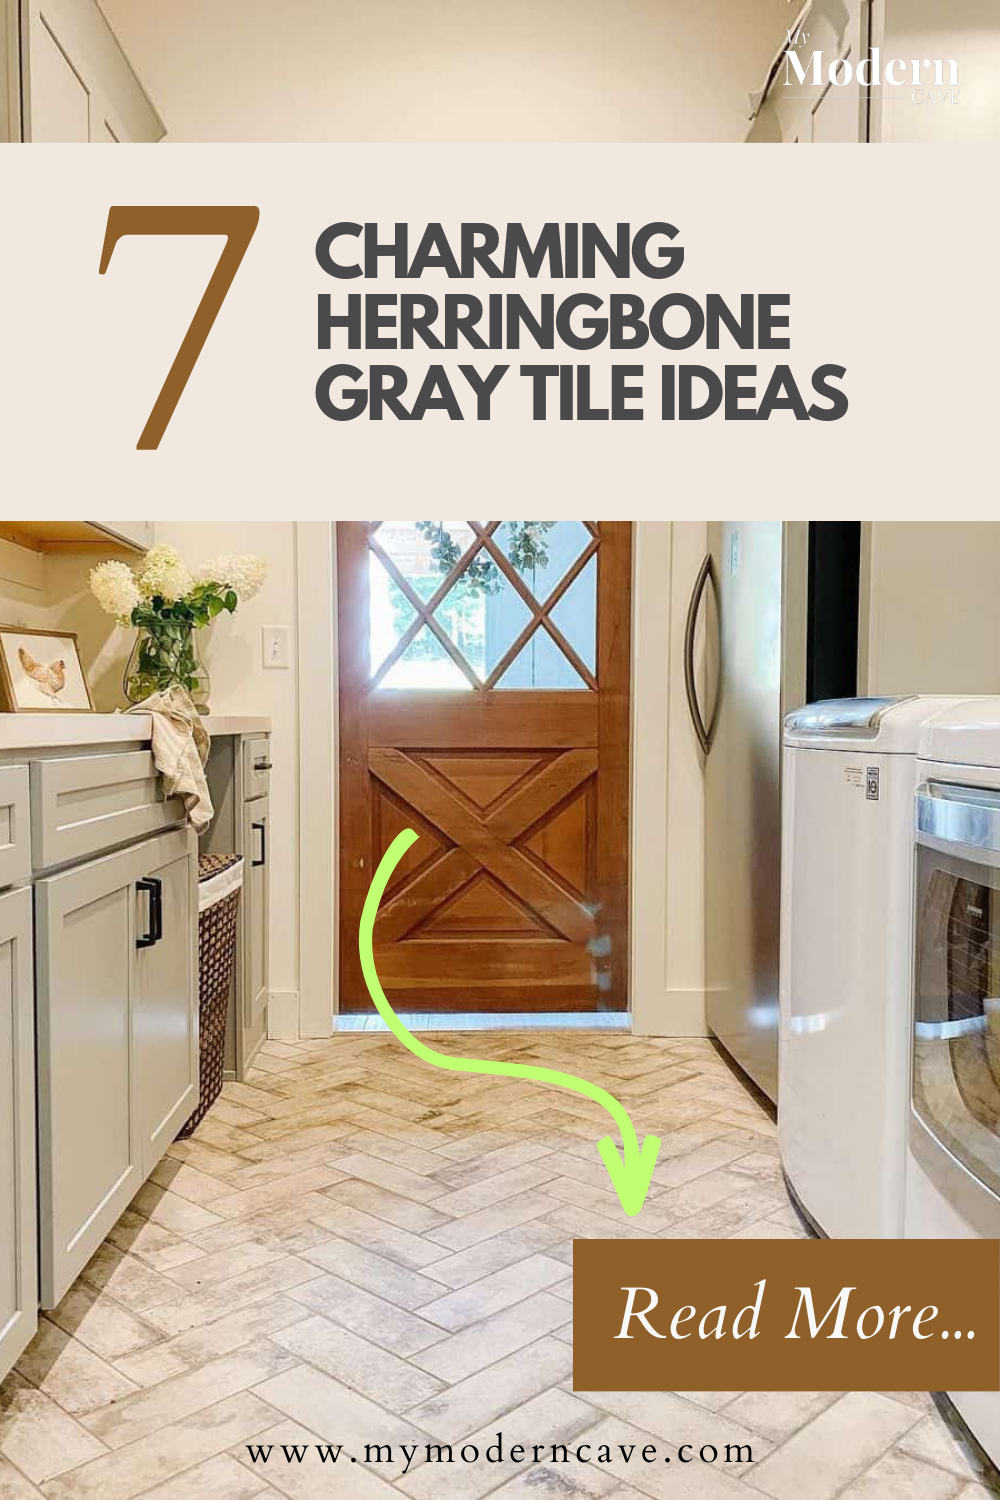 Herringbone Gray Tile  Ideas Infographic